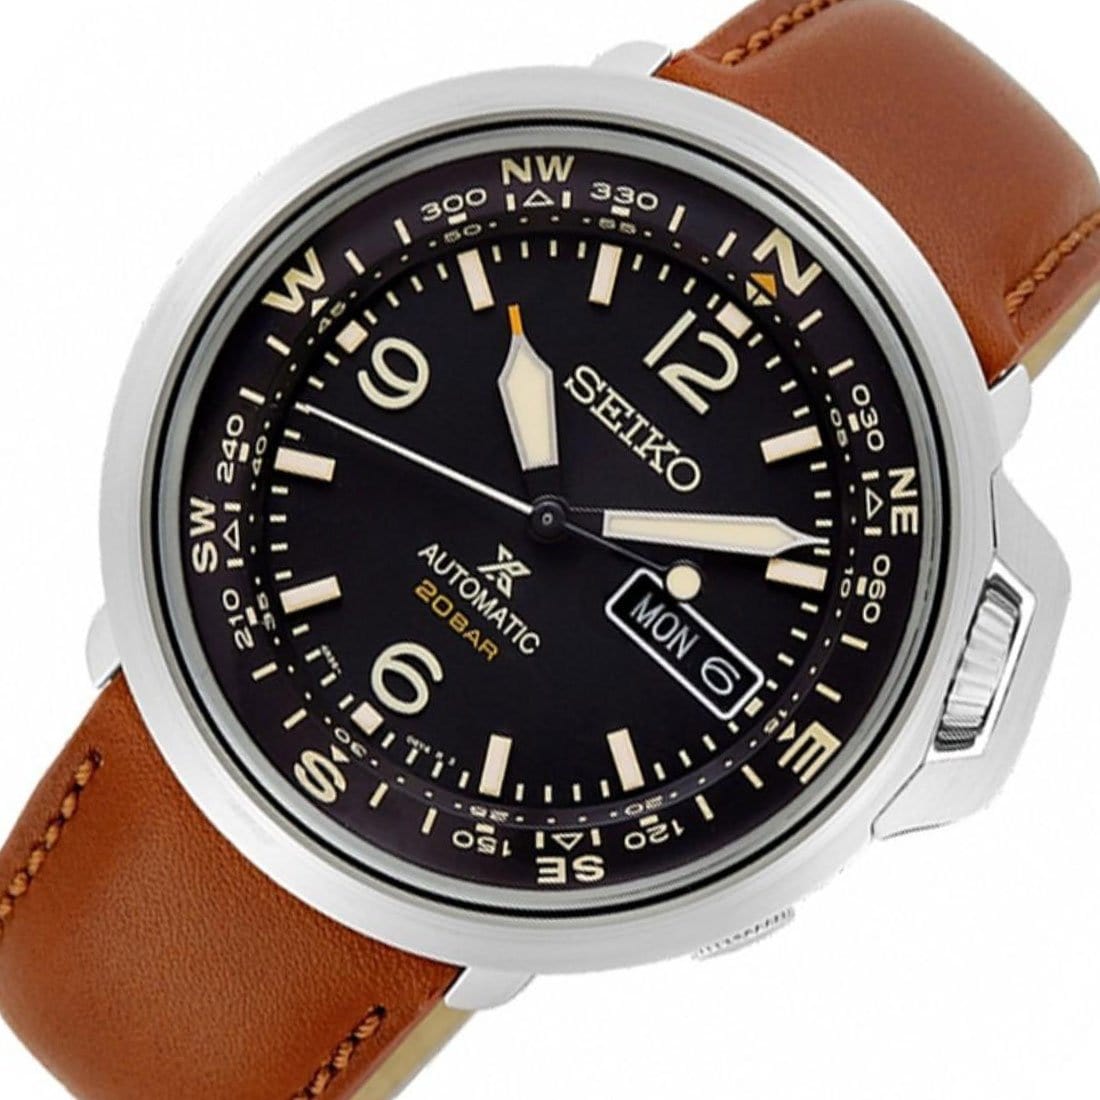 SRPD31 SRPD31J1 SRPD31J Seiko Prospex Compass – Watchkeeper